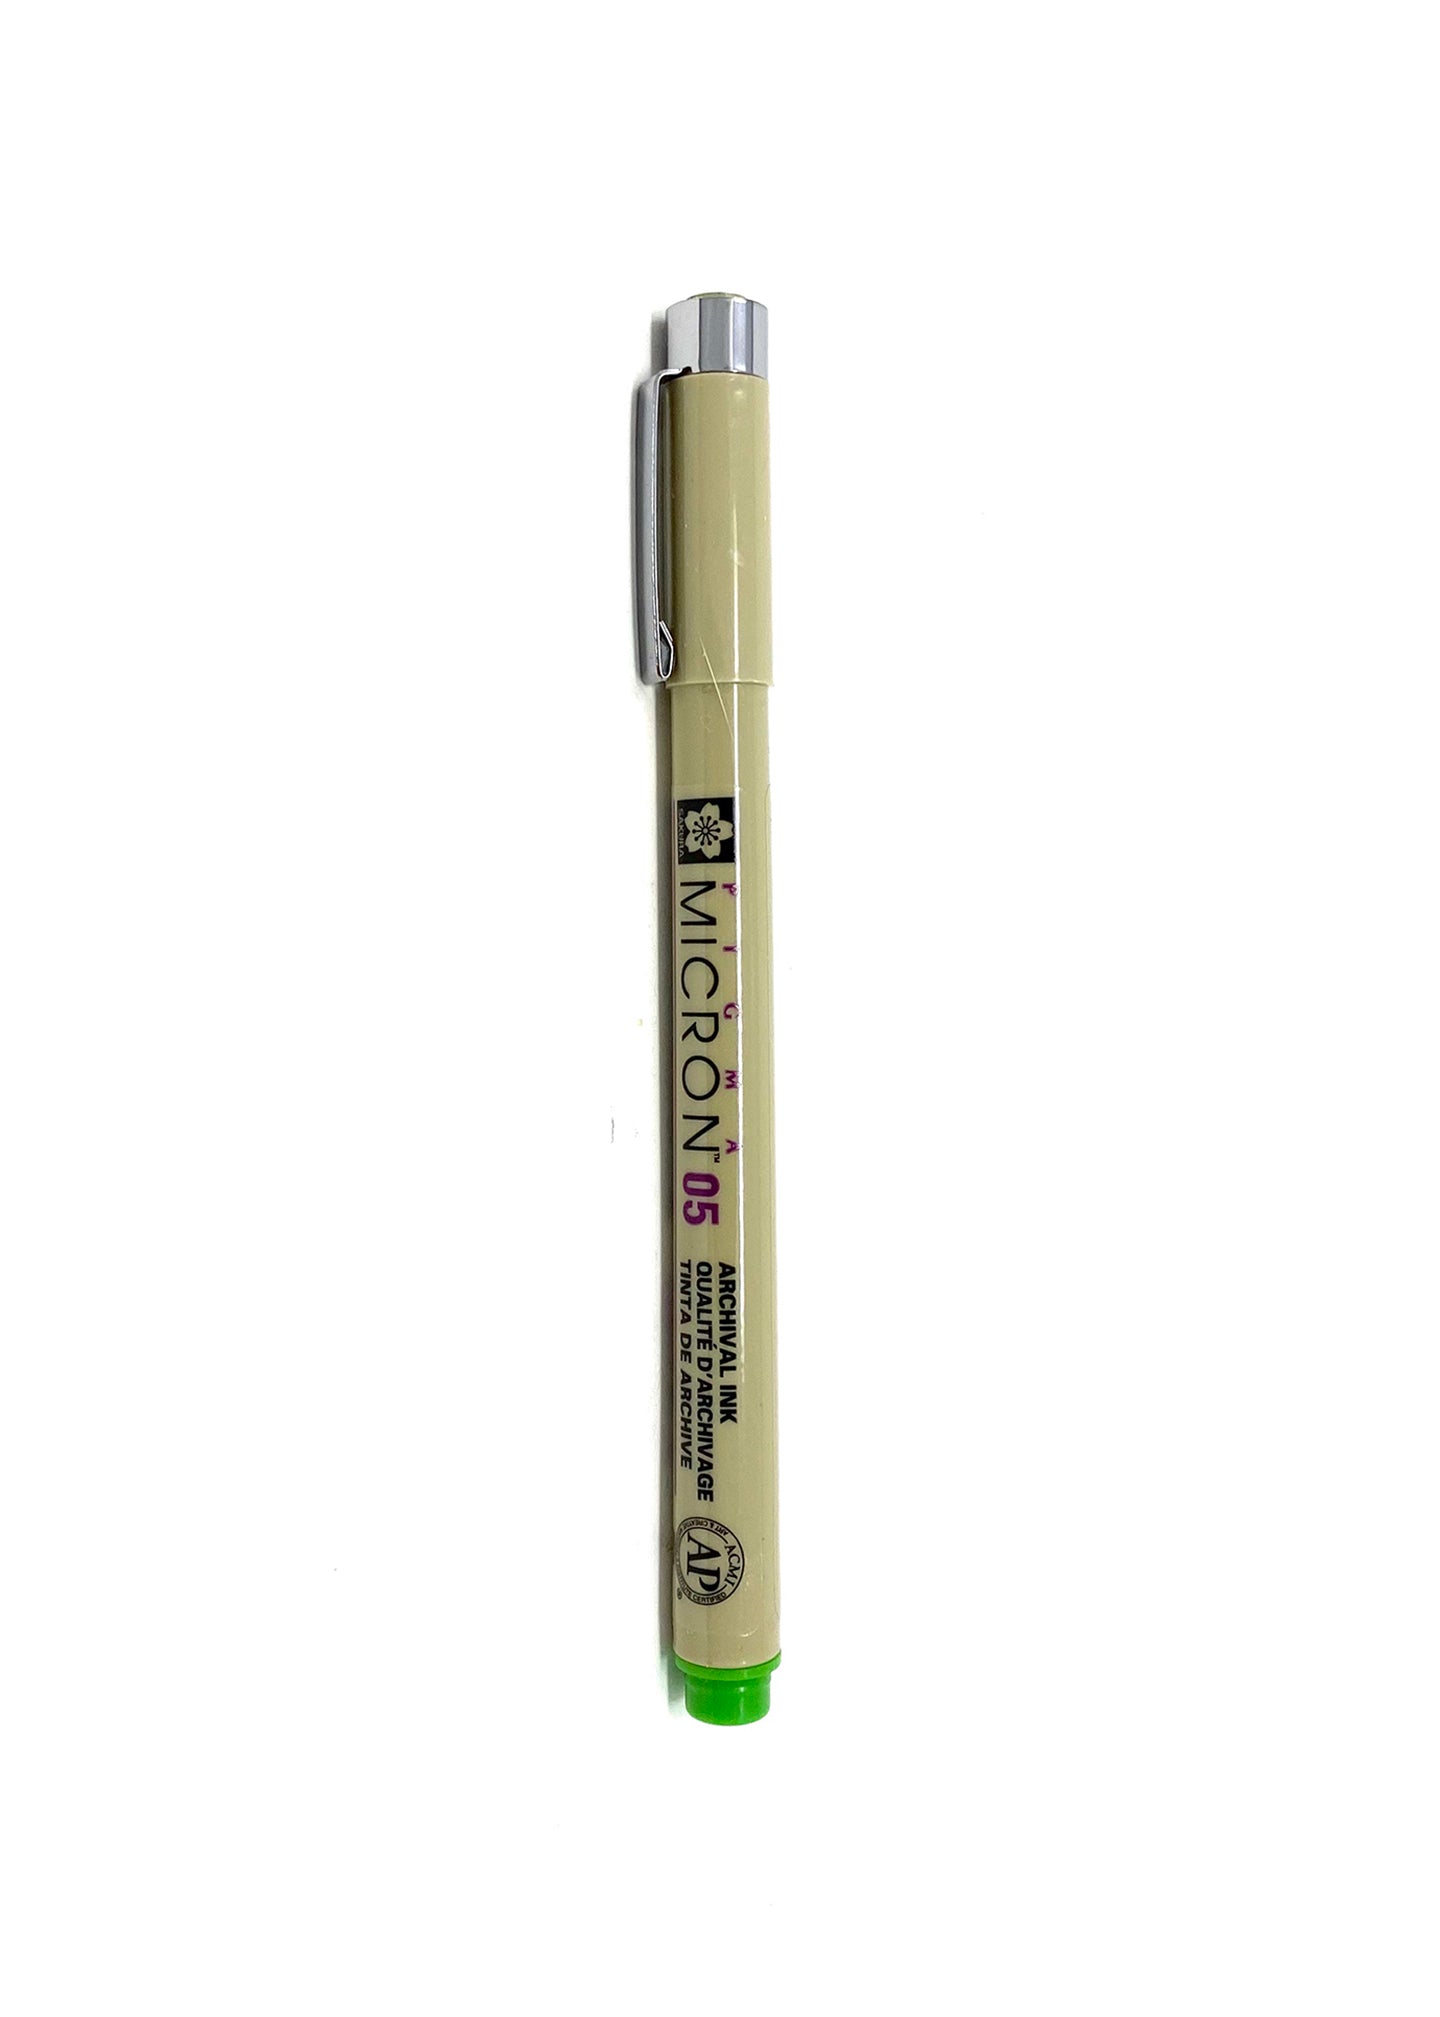 Pigma Micron Pens - 05 (view colors)